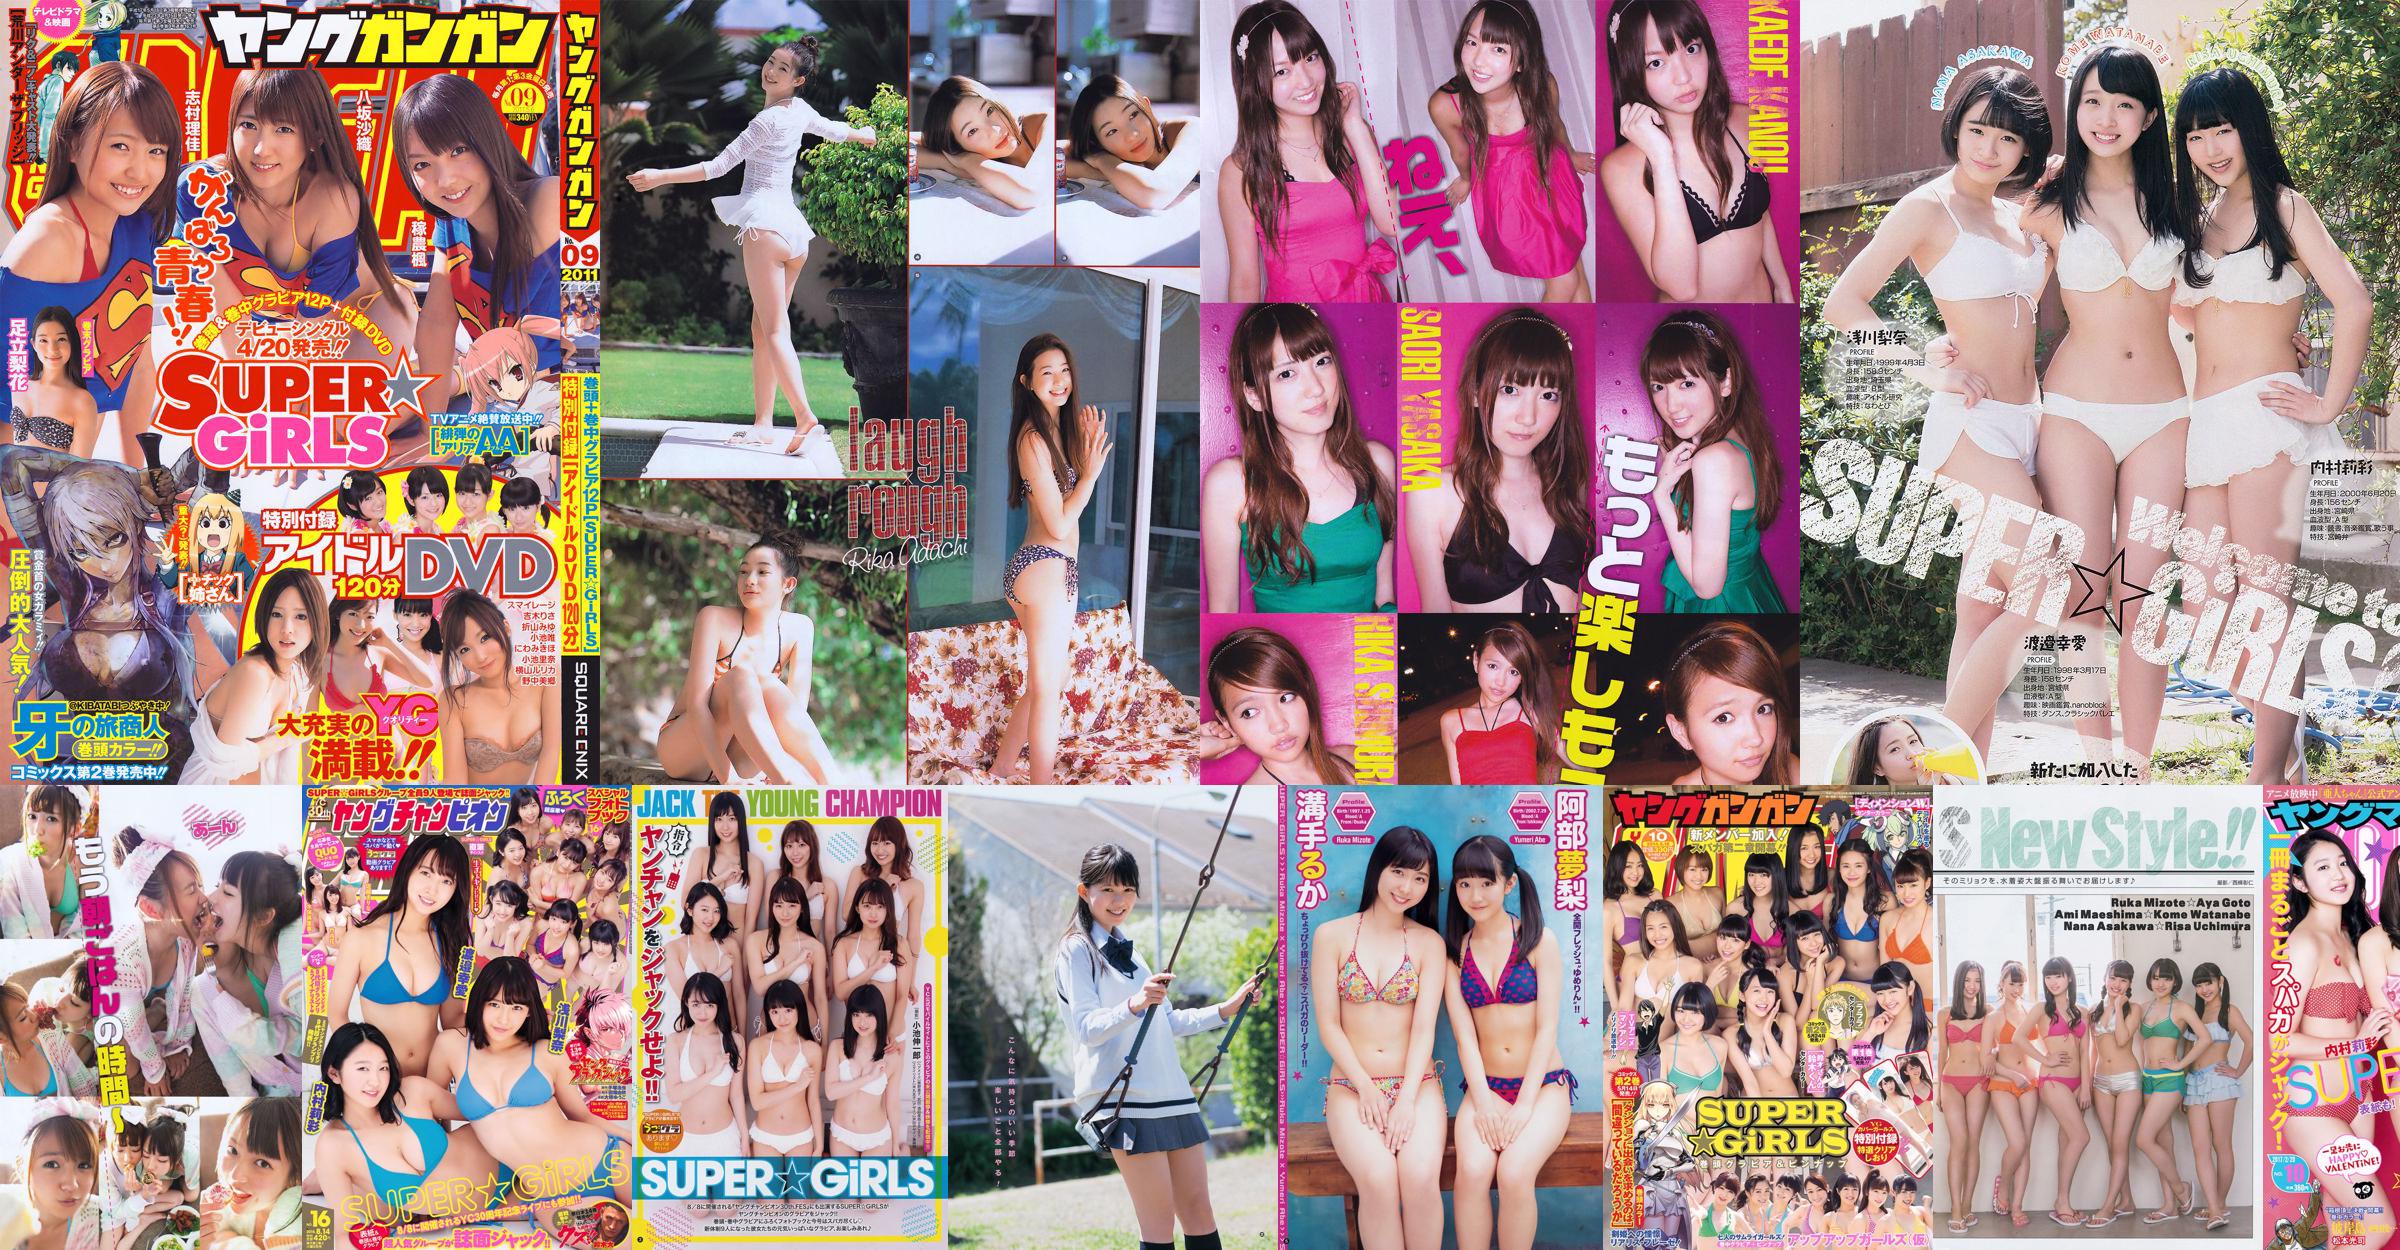 [Young Gangan] SUPER ☆ GiRLS Momose Misaki 2011 No.14 Photo Magazine No.ba09fa Trang 3